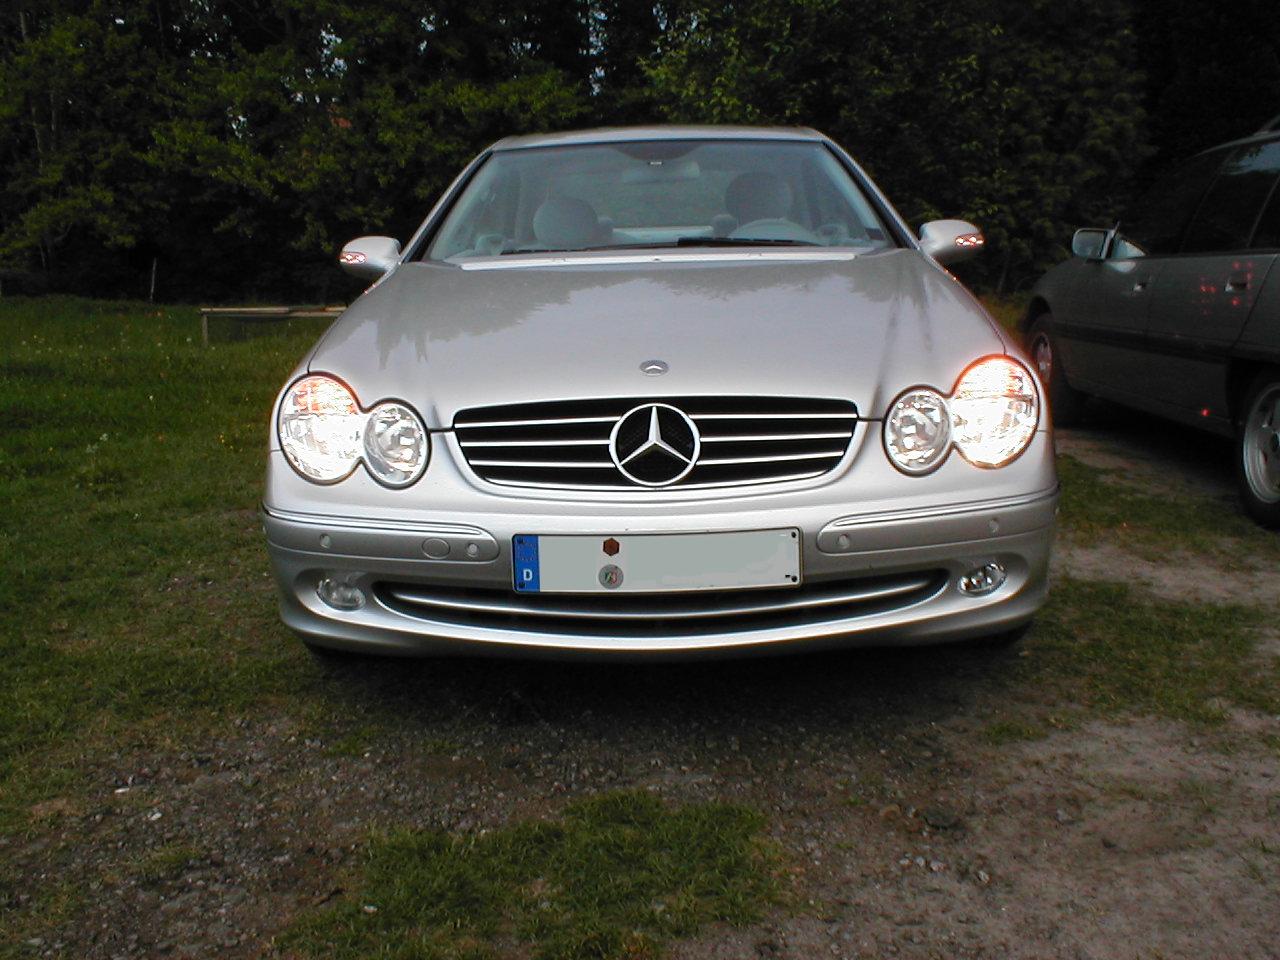 File:Mercedes-Benz W638 rear 20080215.jpg - Wikimedia Commons